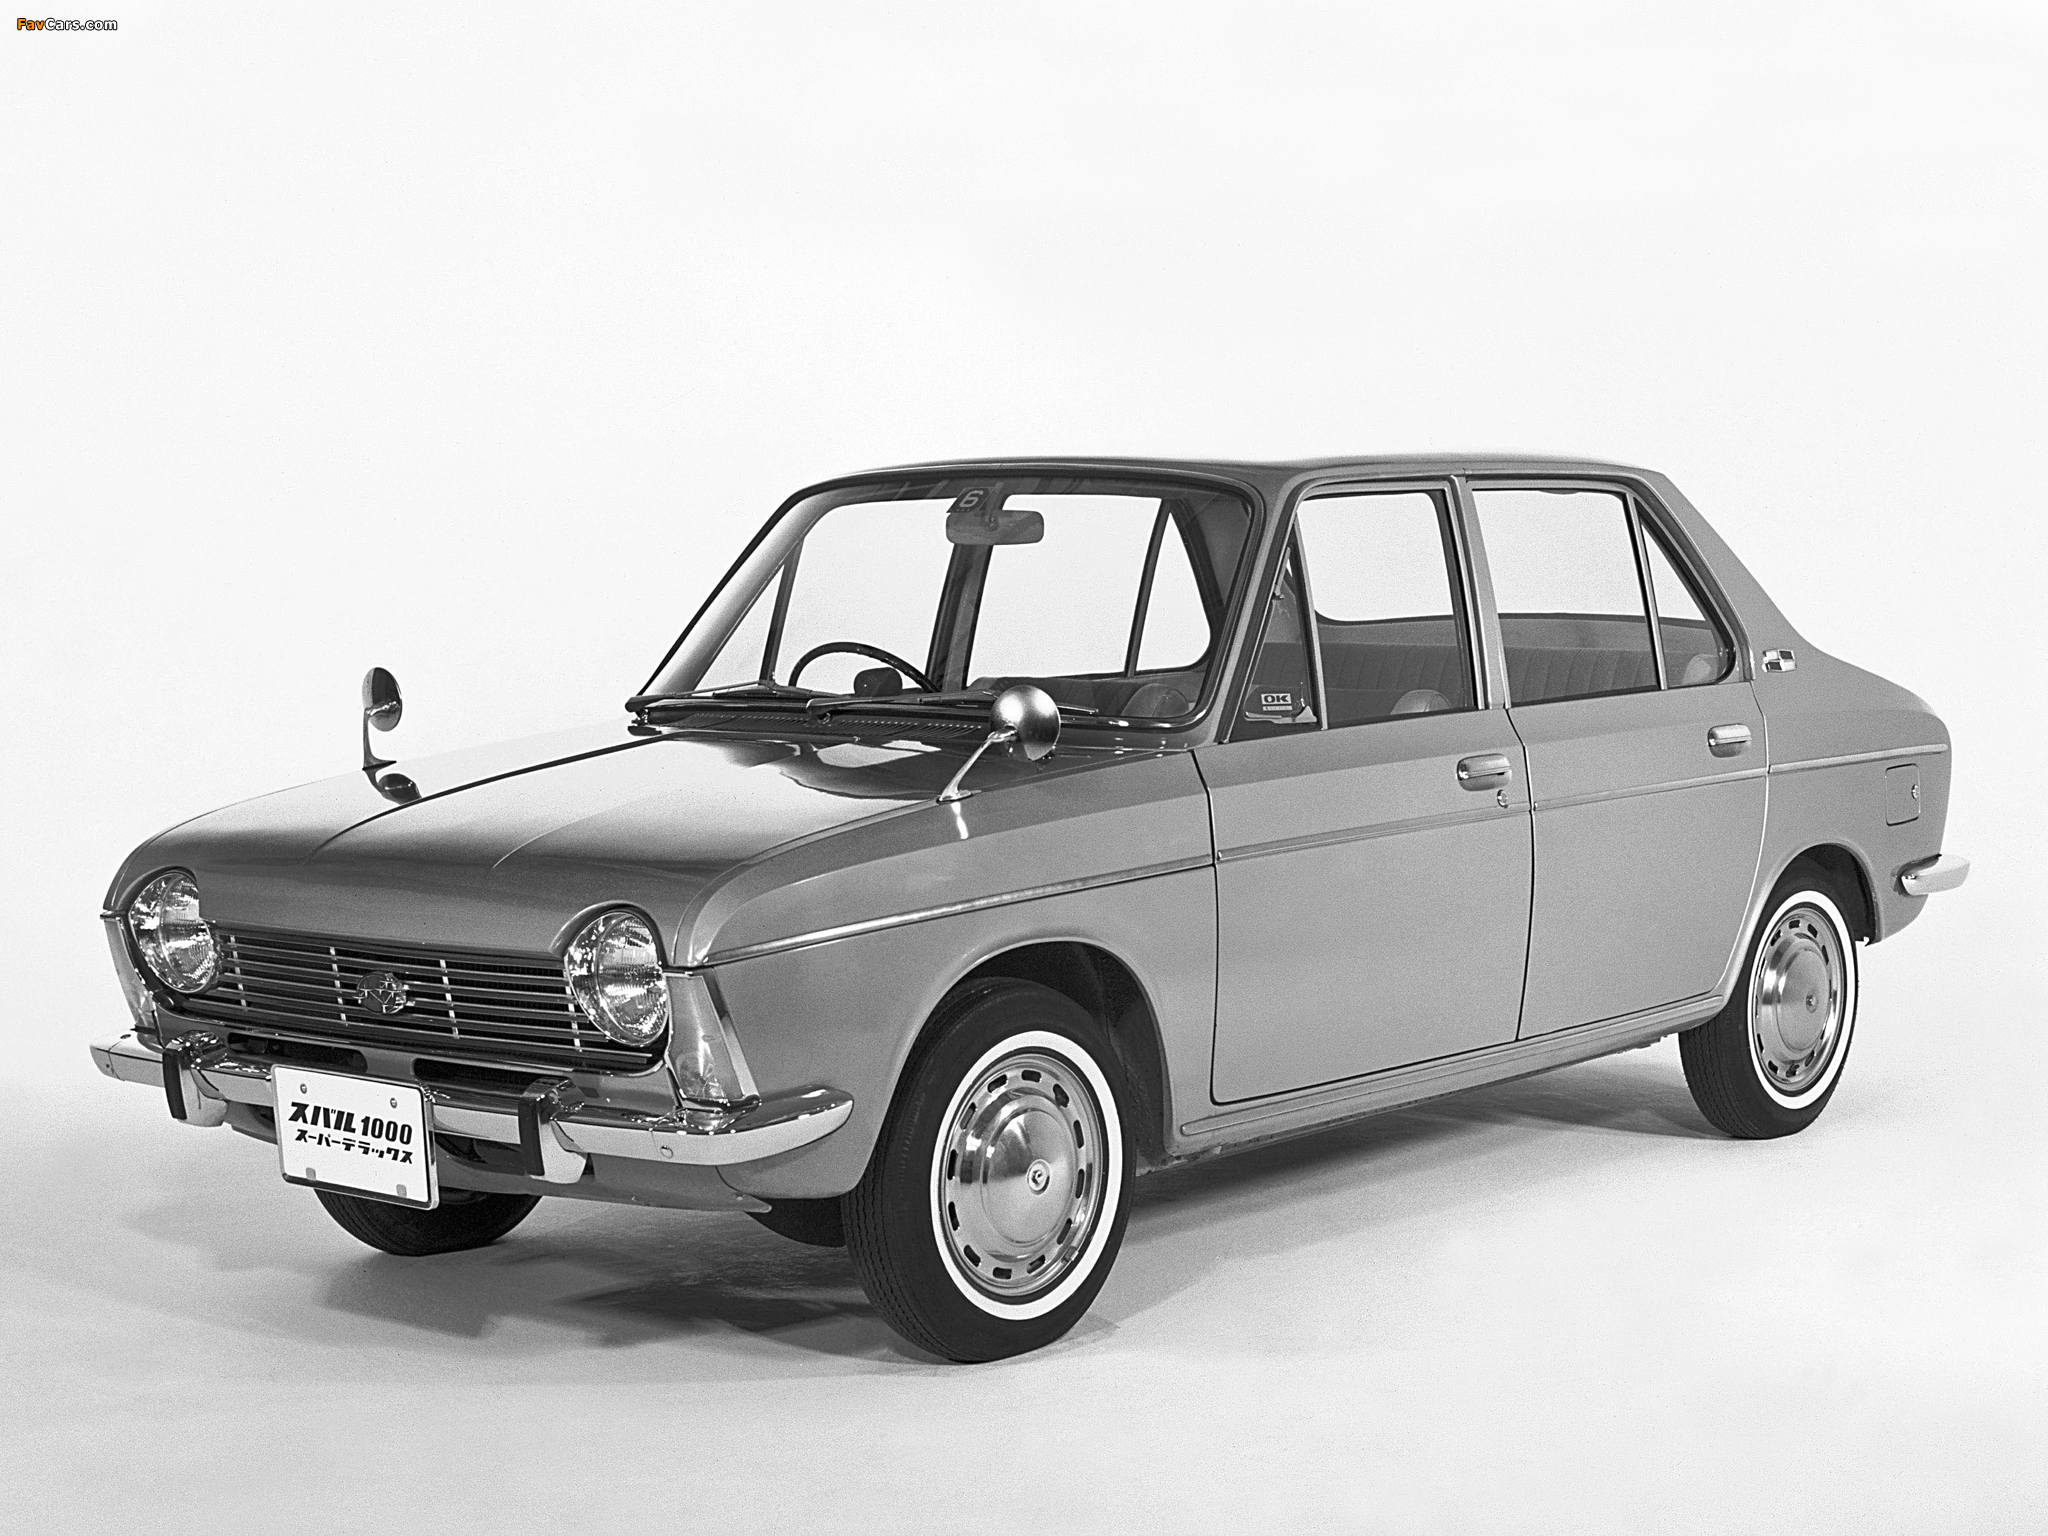 Subaru 1000 4-door Sedan 1965 69 Wallpapers - Subaru 1000 - HD Wallpaper 